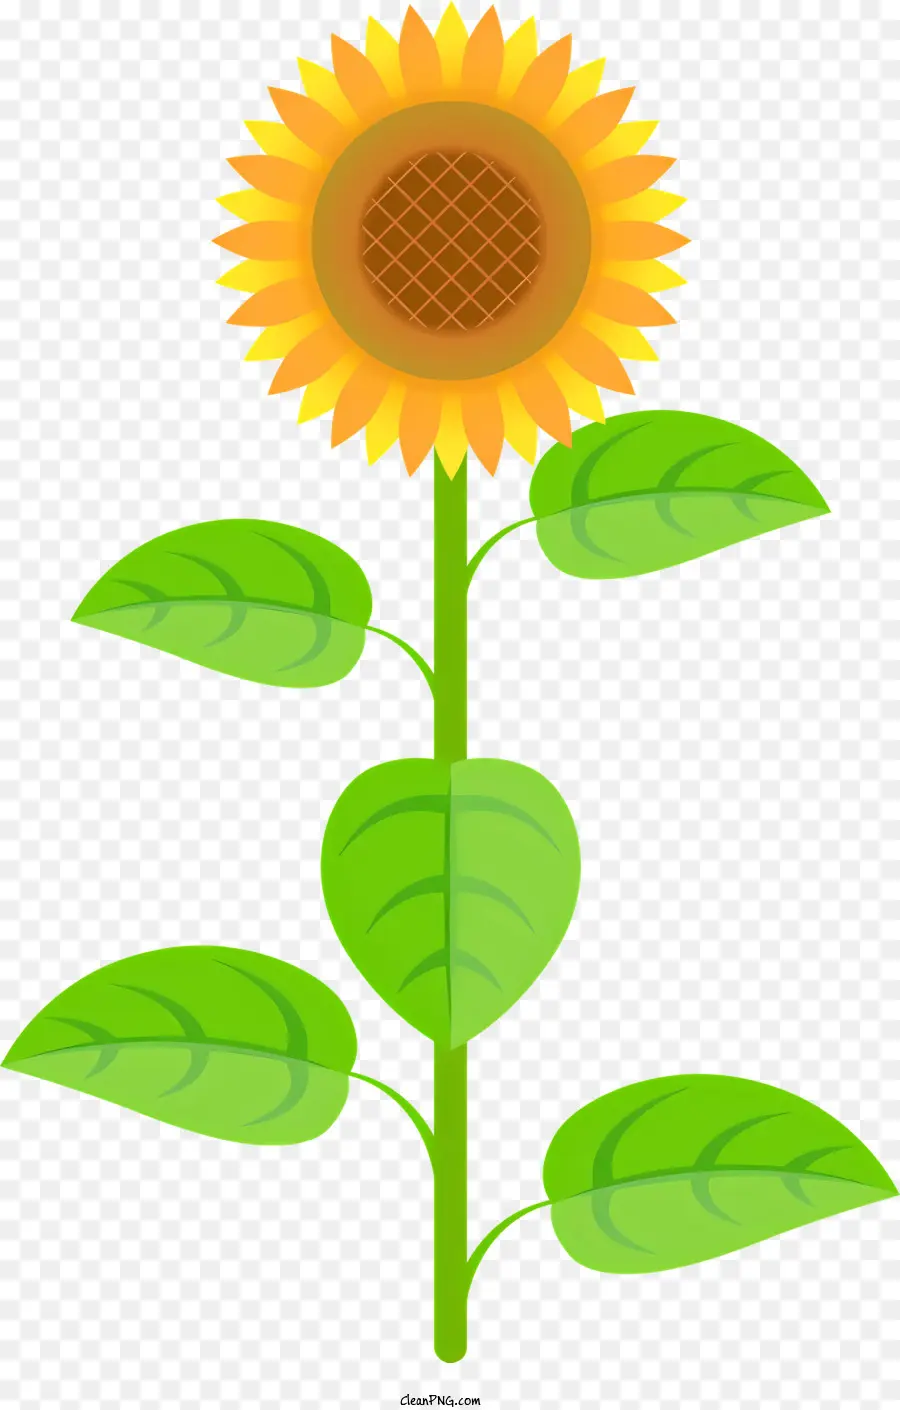 Sonnenblume - Realistisches Sonnenblumenbild mit lebendigen Farben